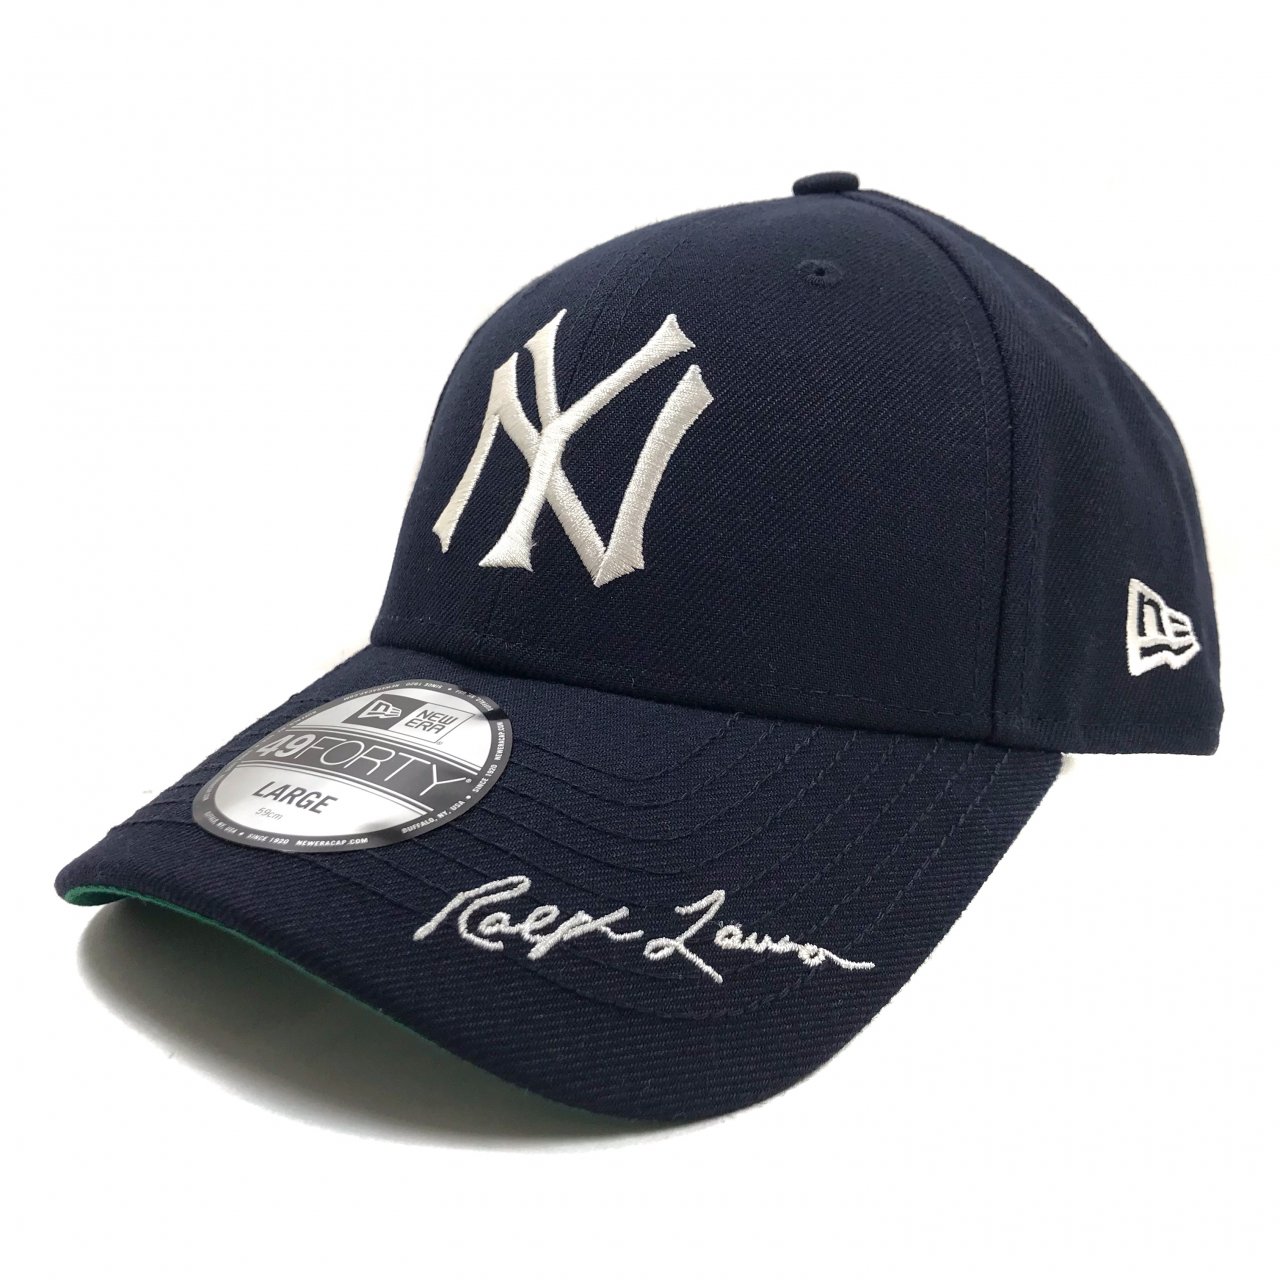 新品 Polo Ralph Lauren New York Yankees Limited Edition Fitted Cap 紺 L ポロ ラルフローレン ヤンキース キャップ コラボ Newjoke Online Store